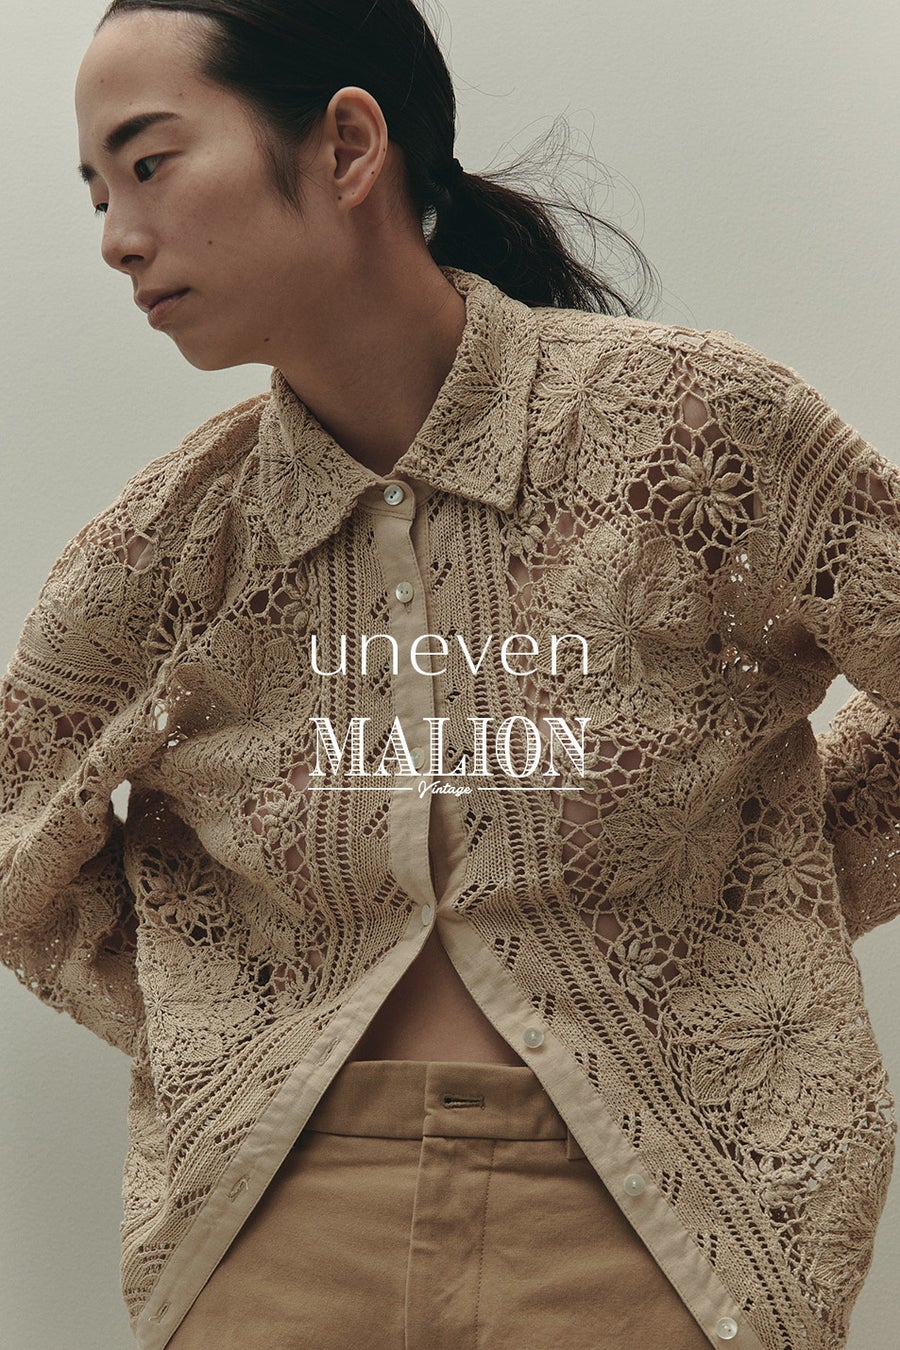 コスメブランド「uneven」が、ファッションブランド「MALION vintage」とのPOP UP SHOPを新宿で開催。初のアパレル商品コラボも。